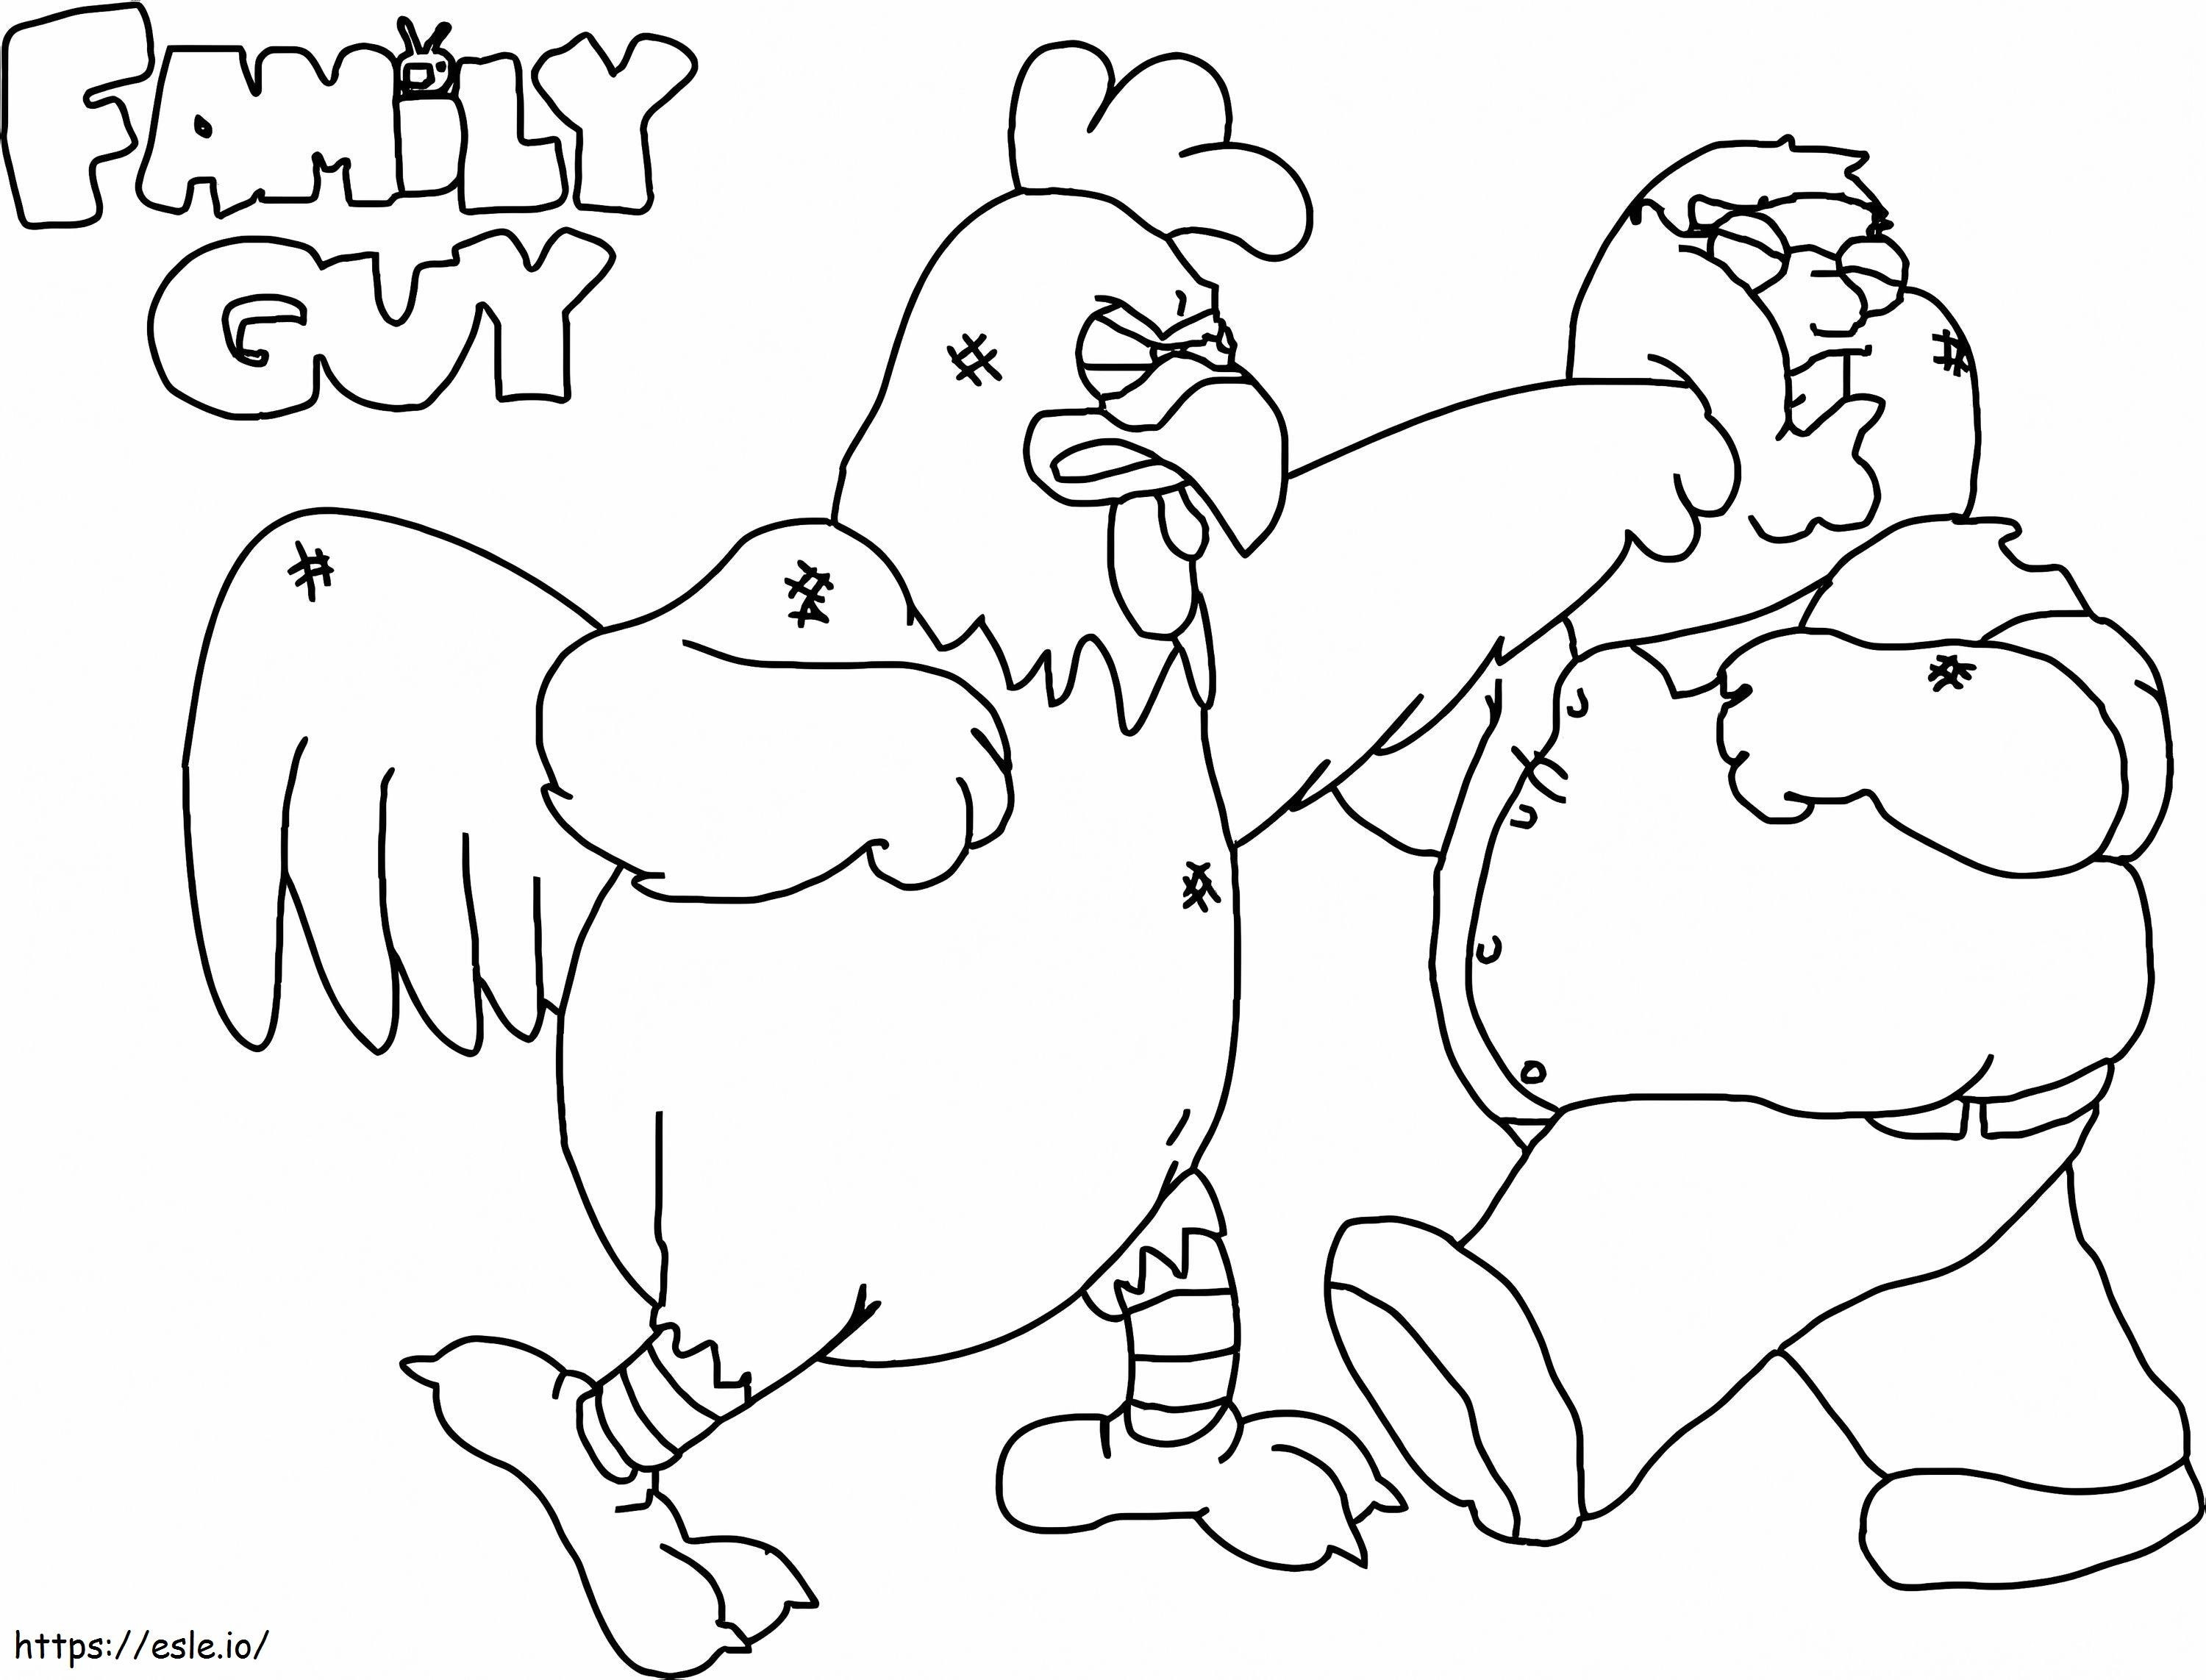 Peter e il combattimento tra galline da colorare